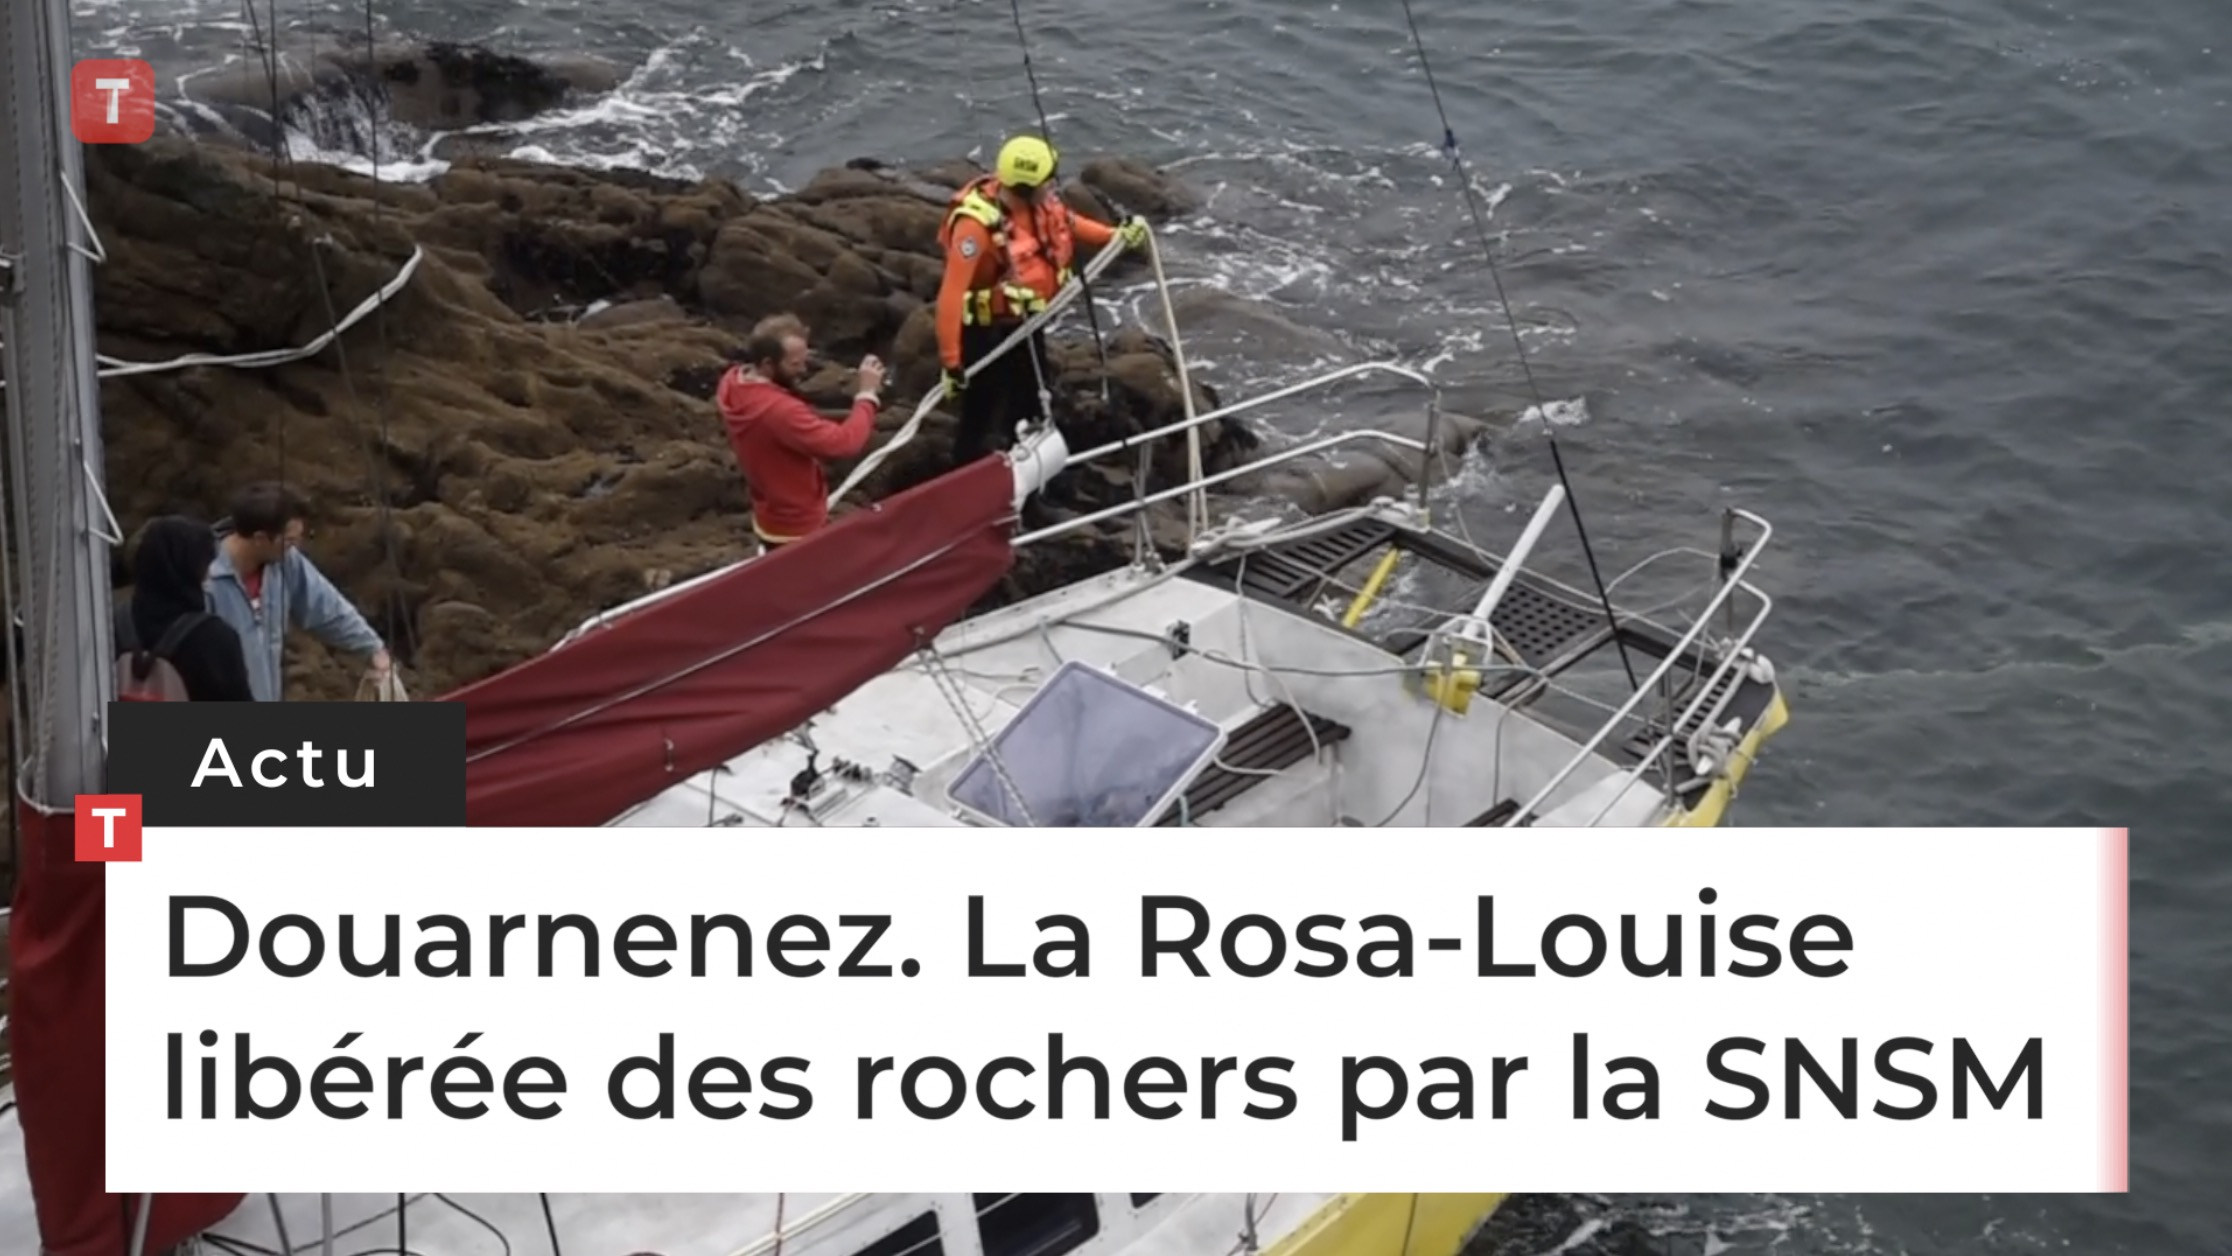 Douarnenez. La Rosa-Louise libérée des rochers par la SNSM (Le Télégramme)